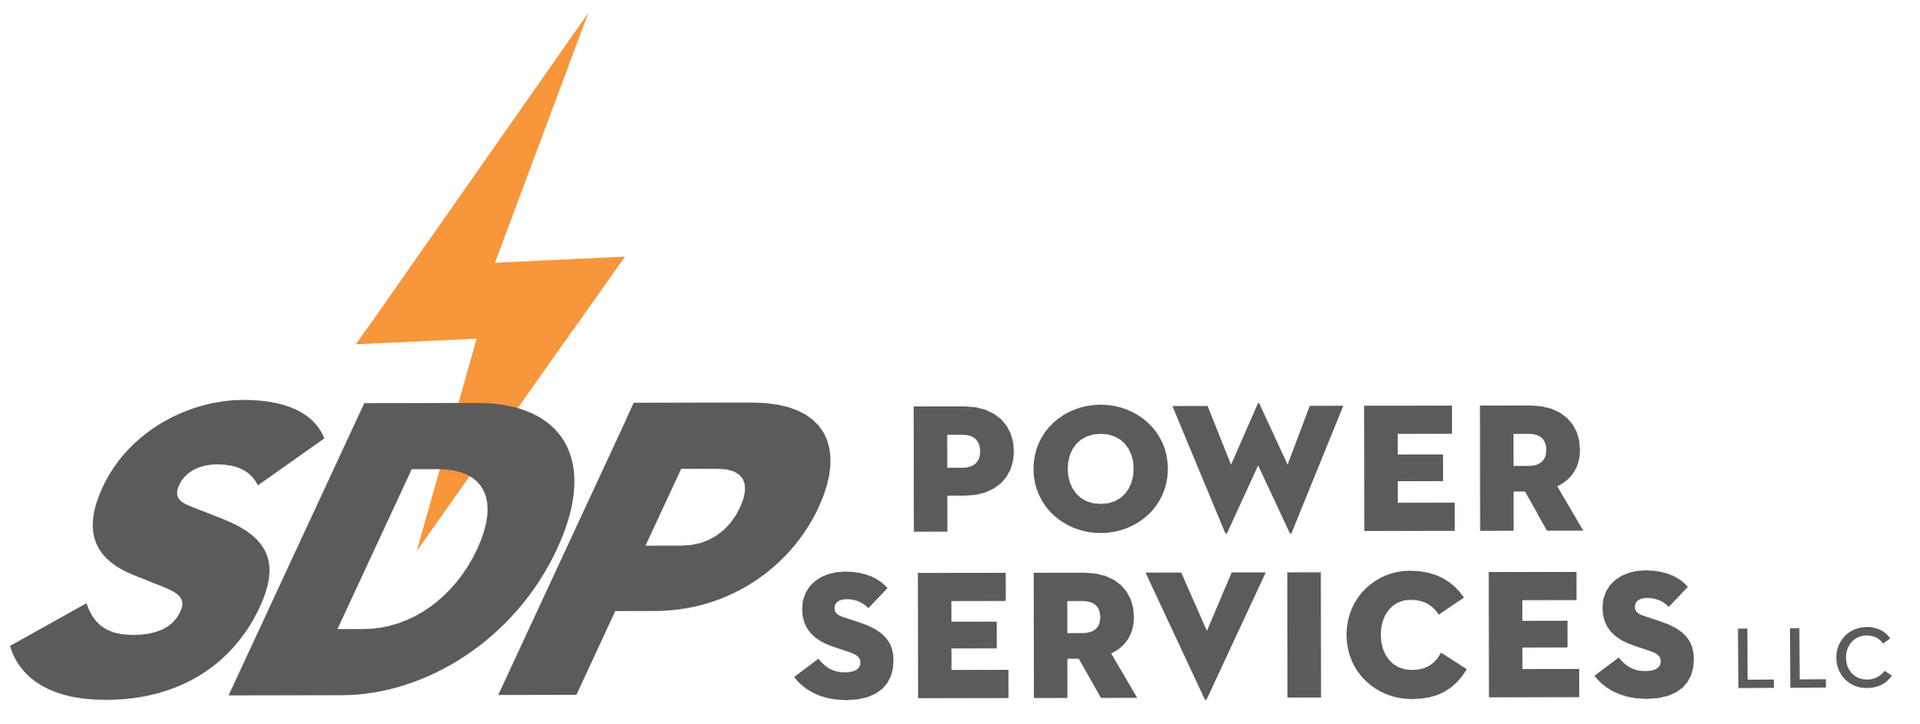 San Diego Power, LLC.